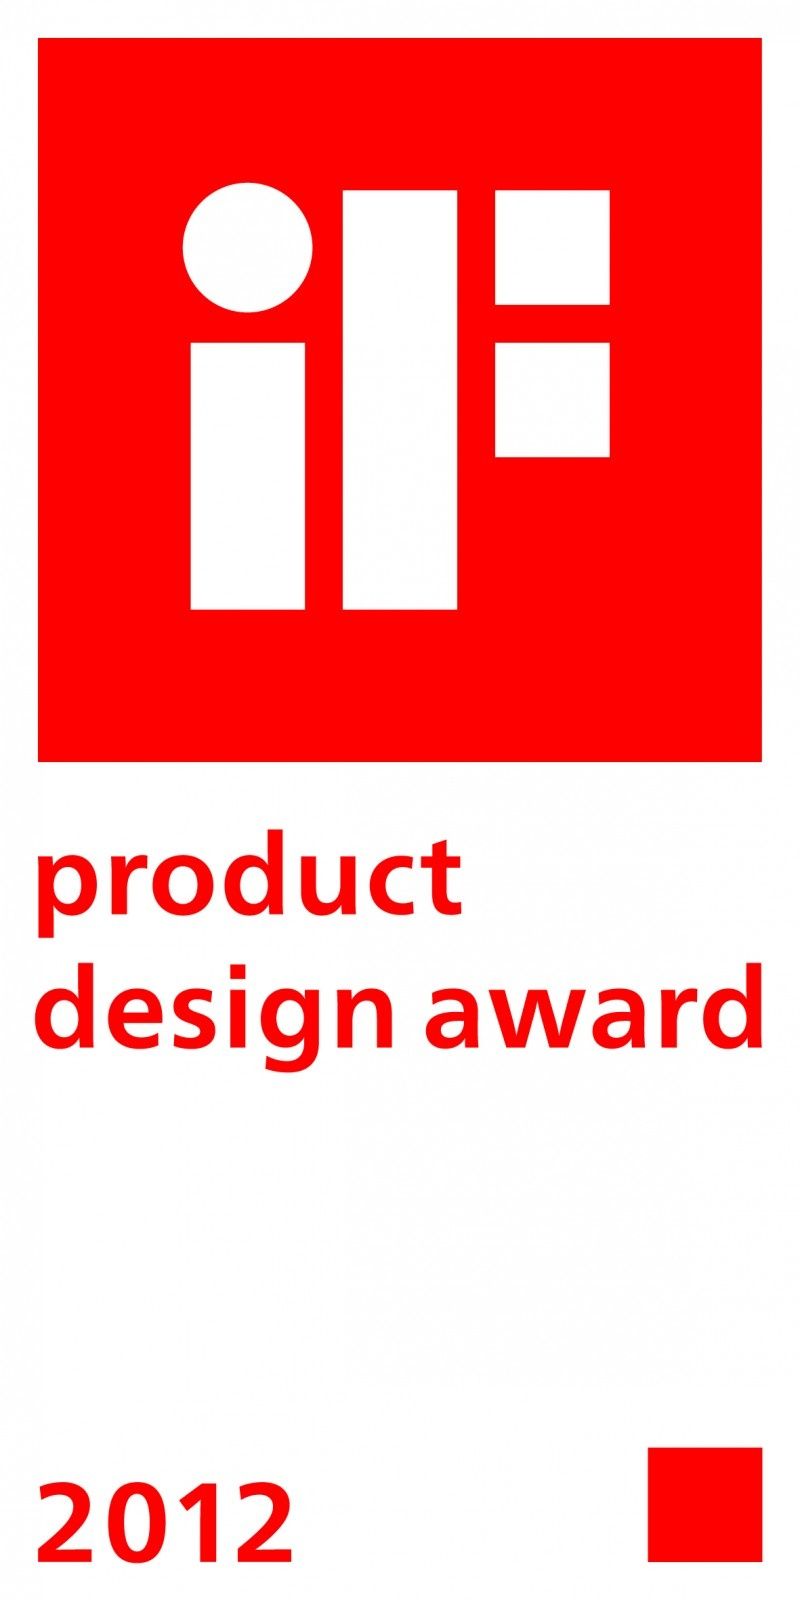 AEG otrzymuje nagrody iF product design award 2012